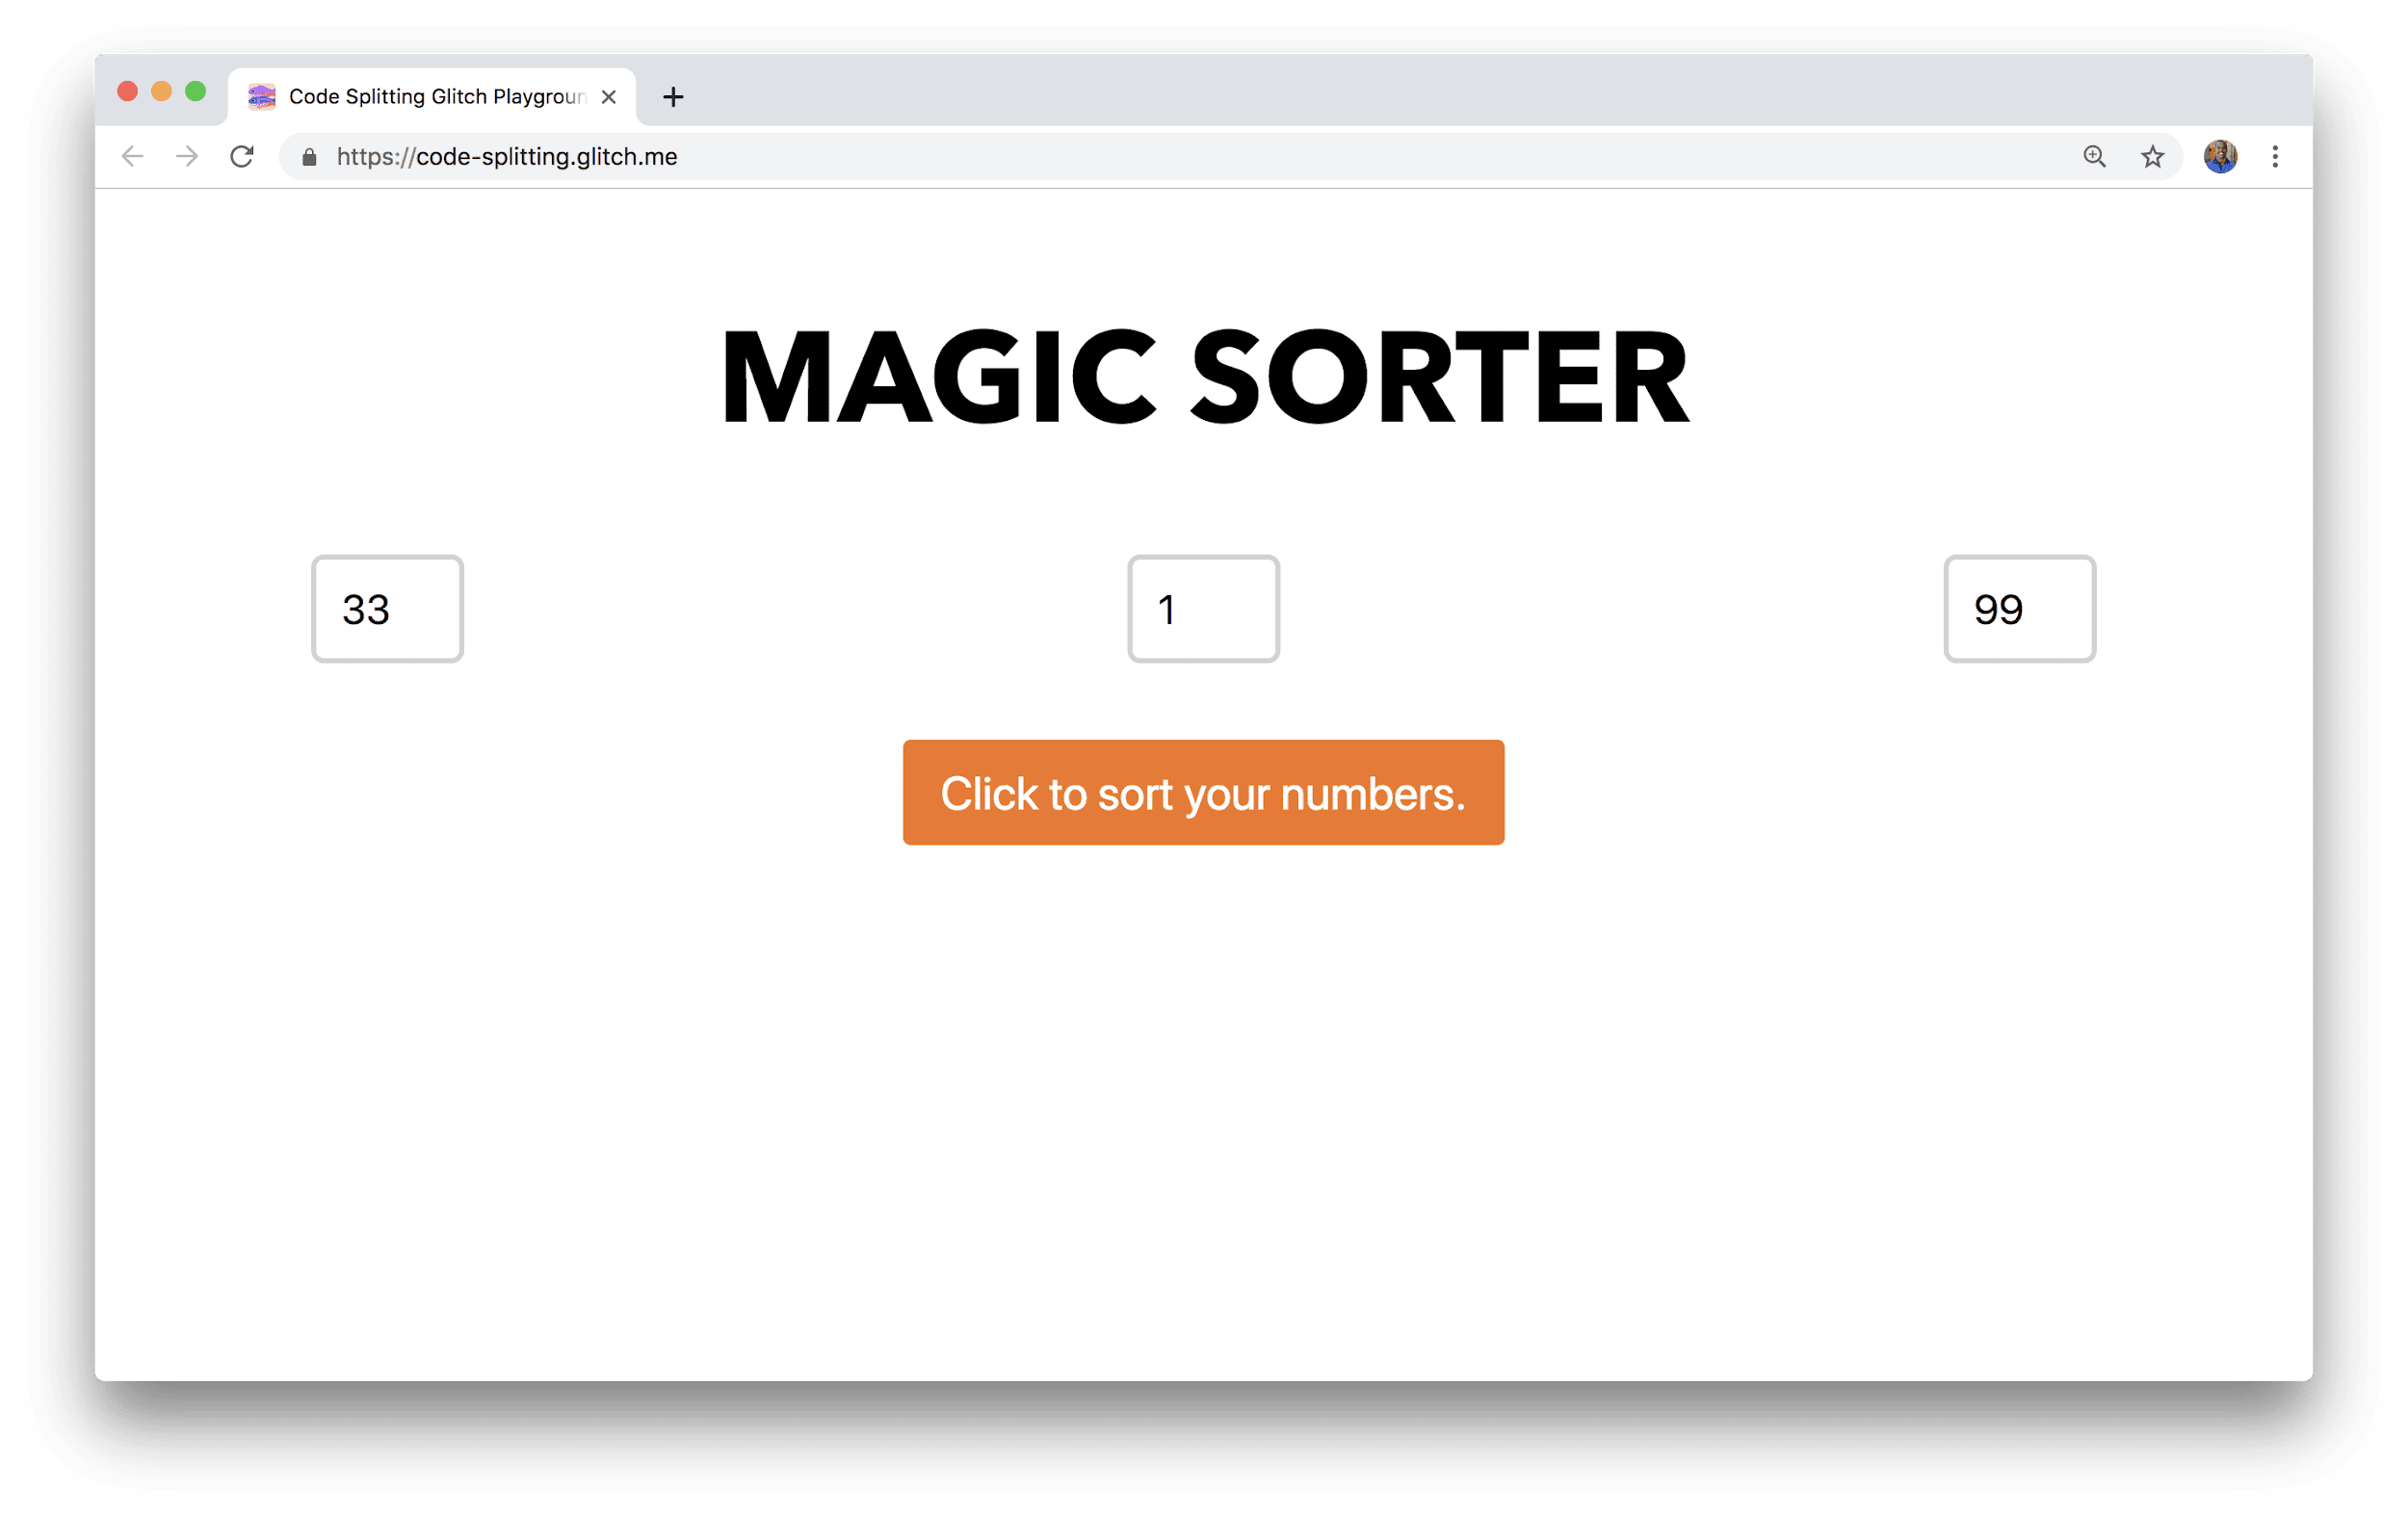 瀏覽器視窗中顯示名為「魔術排序工具」的應用程式，其中包含三個欄位，用於輸入數字和排序按鈕。